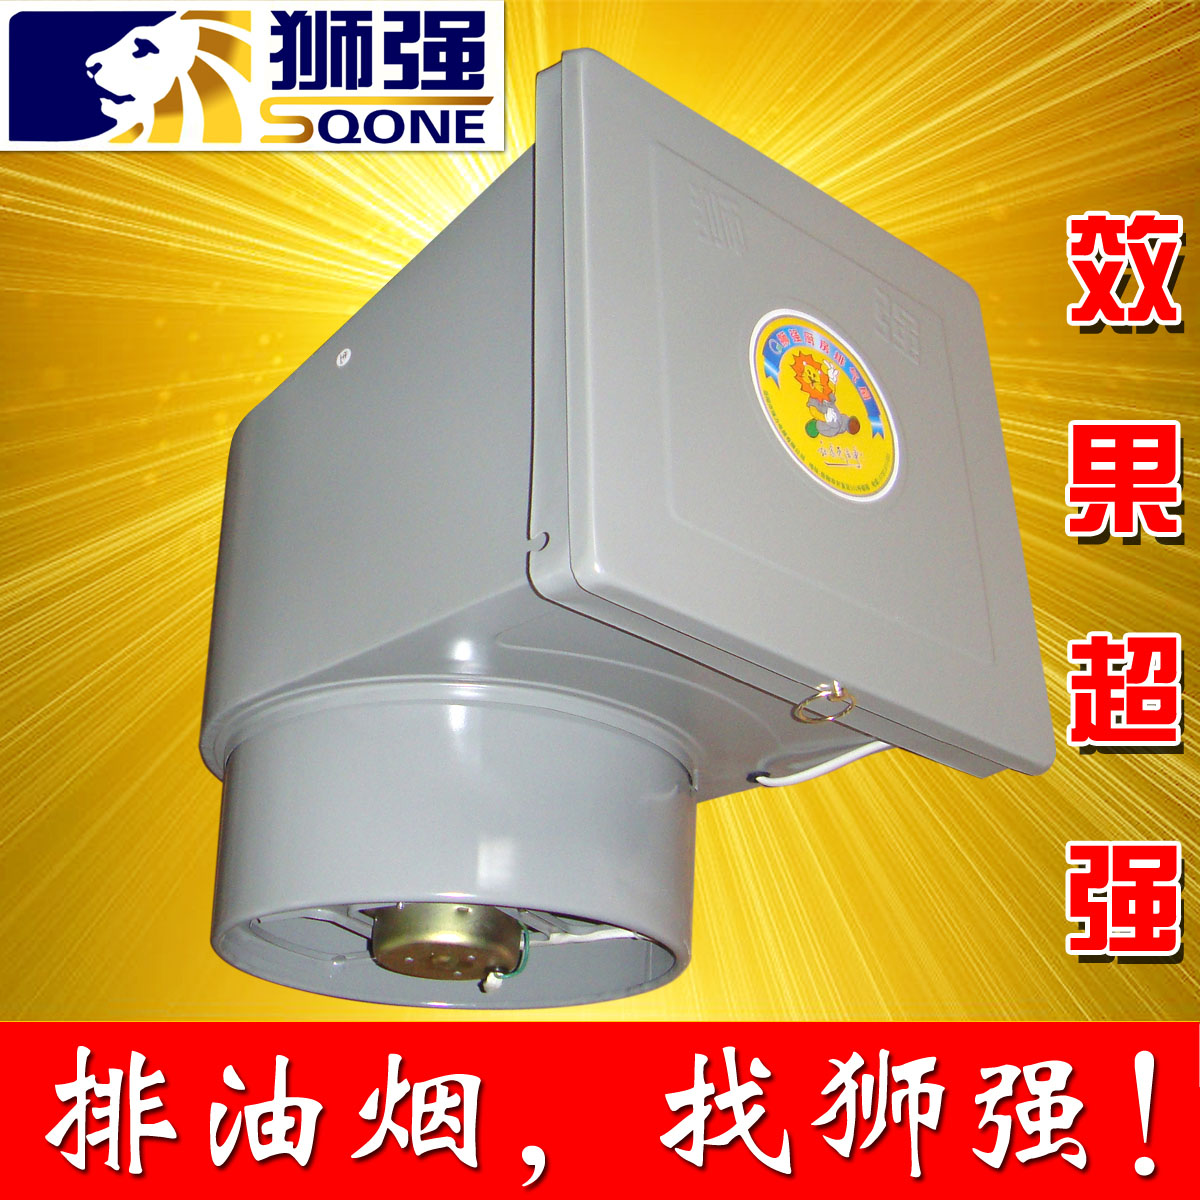 狮强厨房排气扇10寸家用窗式强力换气扇静音吸抽油烟排风机S601A-封面